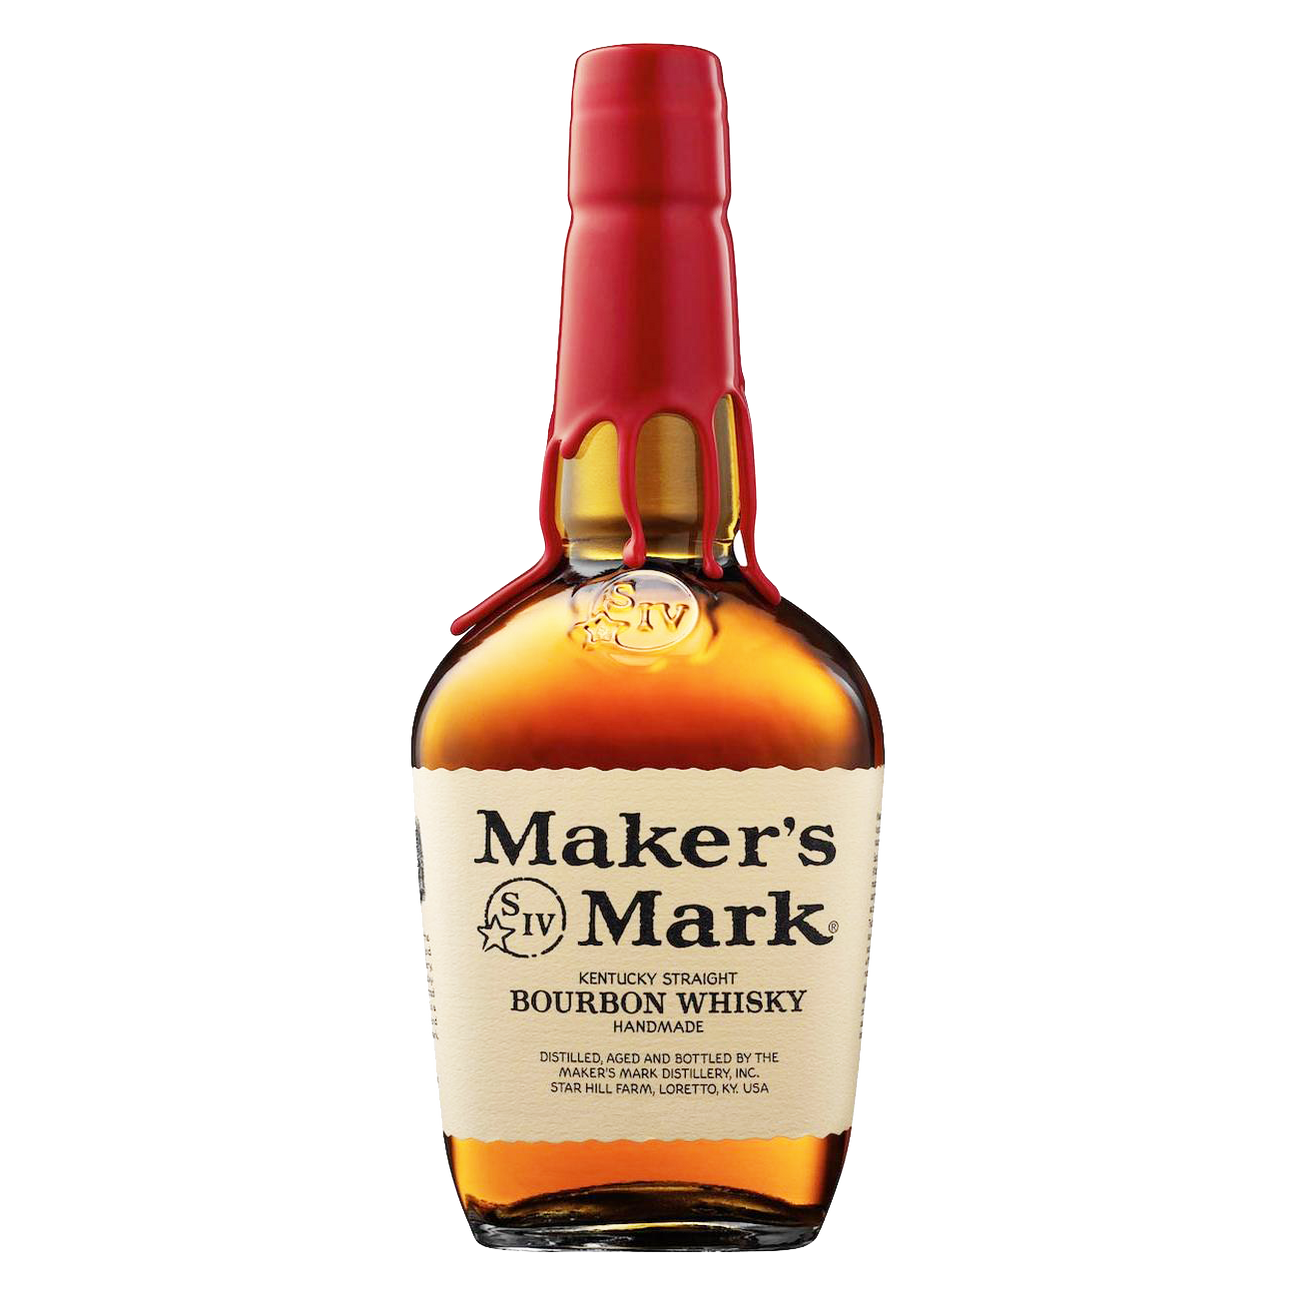 "макерс марк" - знаменитый бурбон американцев, национальное достояние страны